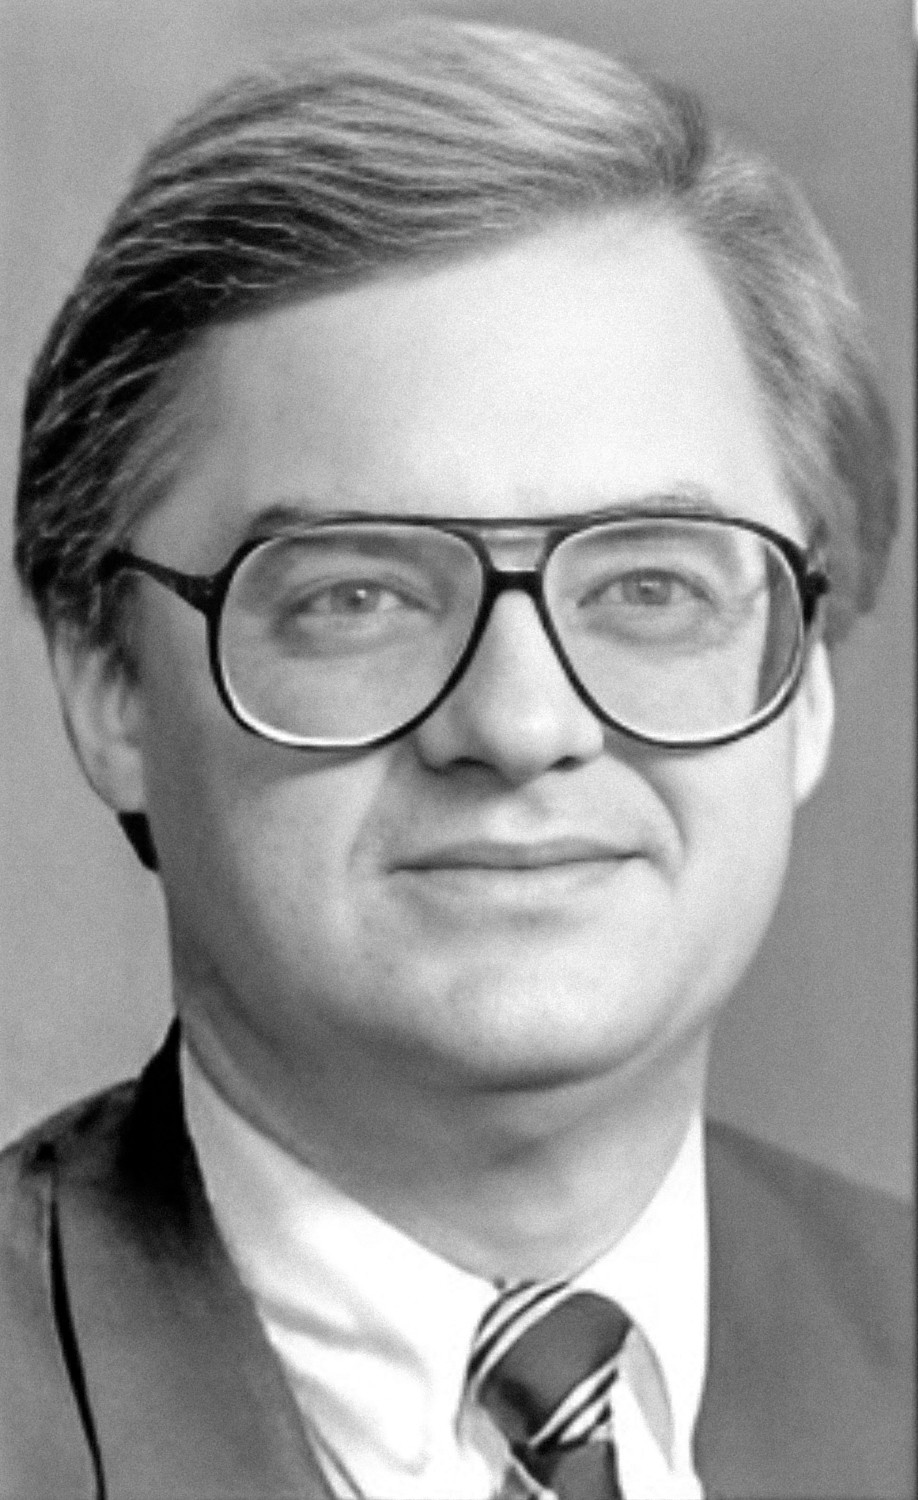 Восстановленное изображение Дэвида Гленна Льюиса в очках, которые помогли опознать его тело. Викисклад